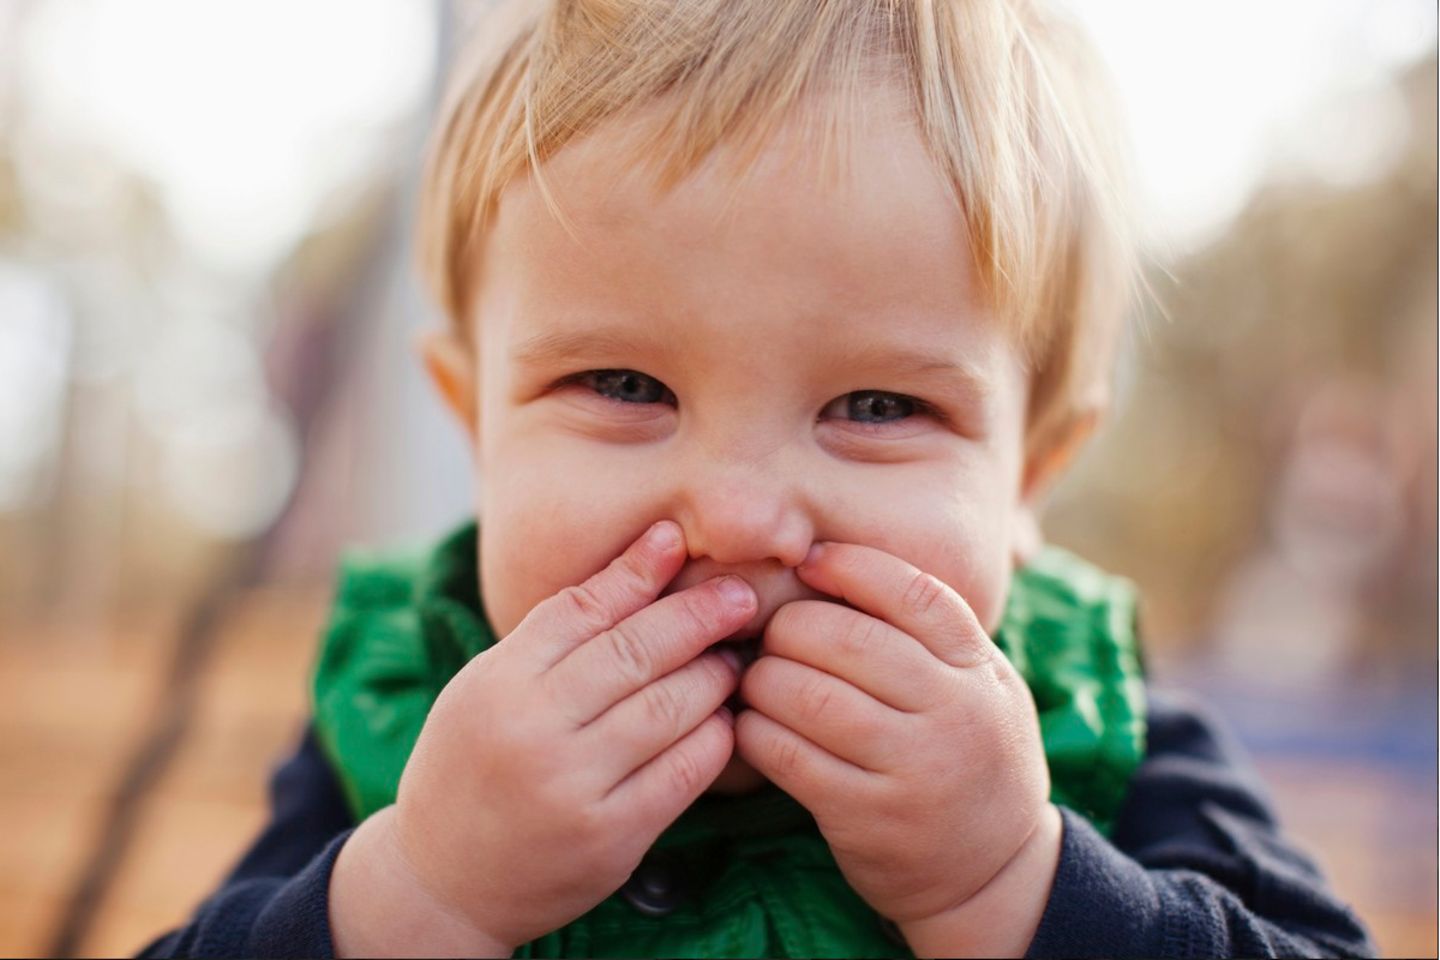 Kleinkinder haben kleine Dinge oft schneller im Mund, als Mama oder Papa gucken können